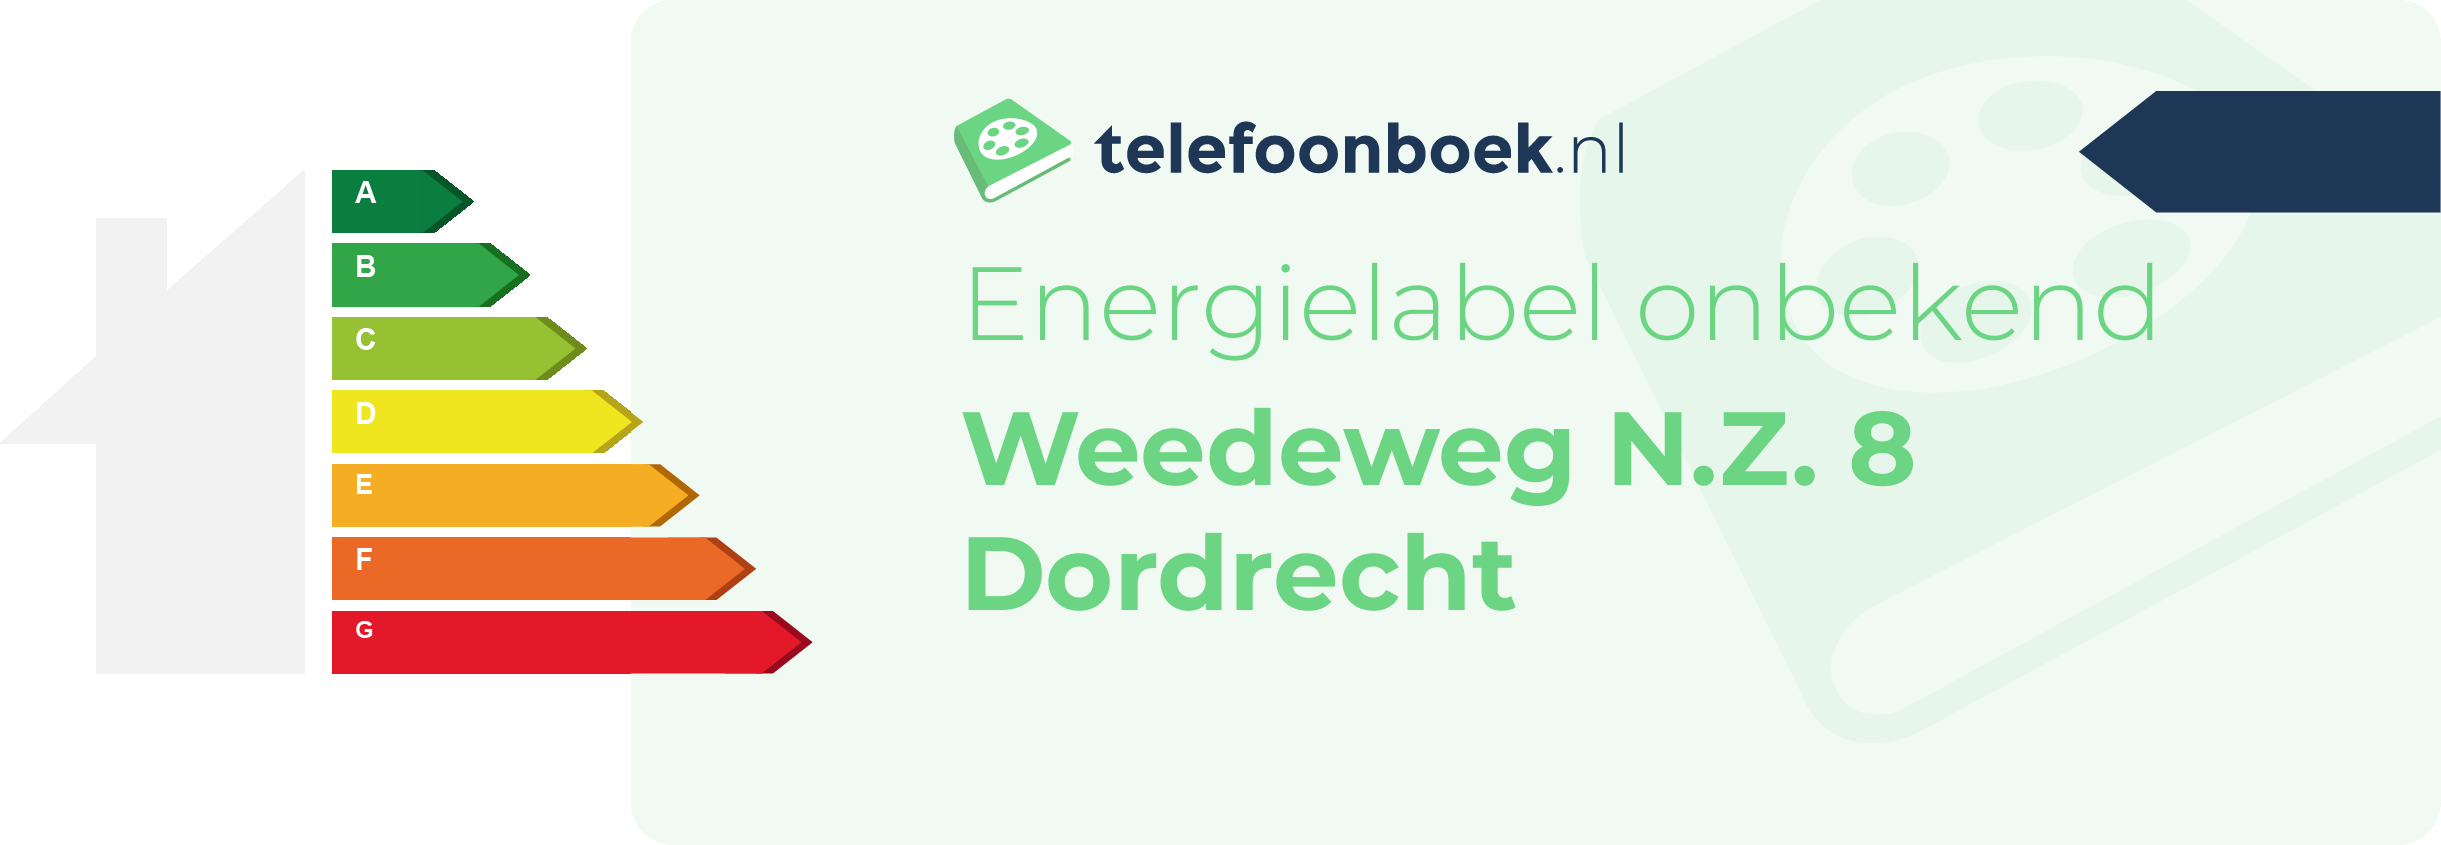 Energielabel Weedeweg N.Z. 8 Dordrecht